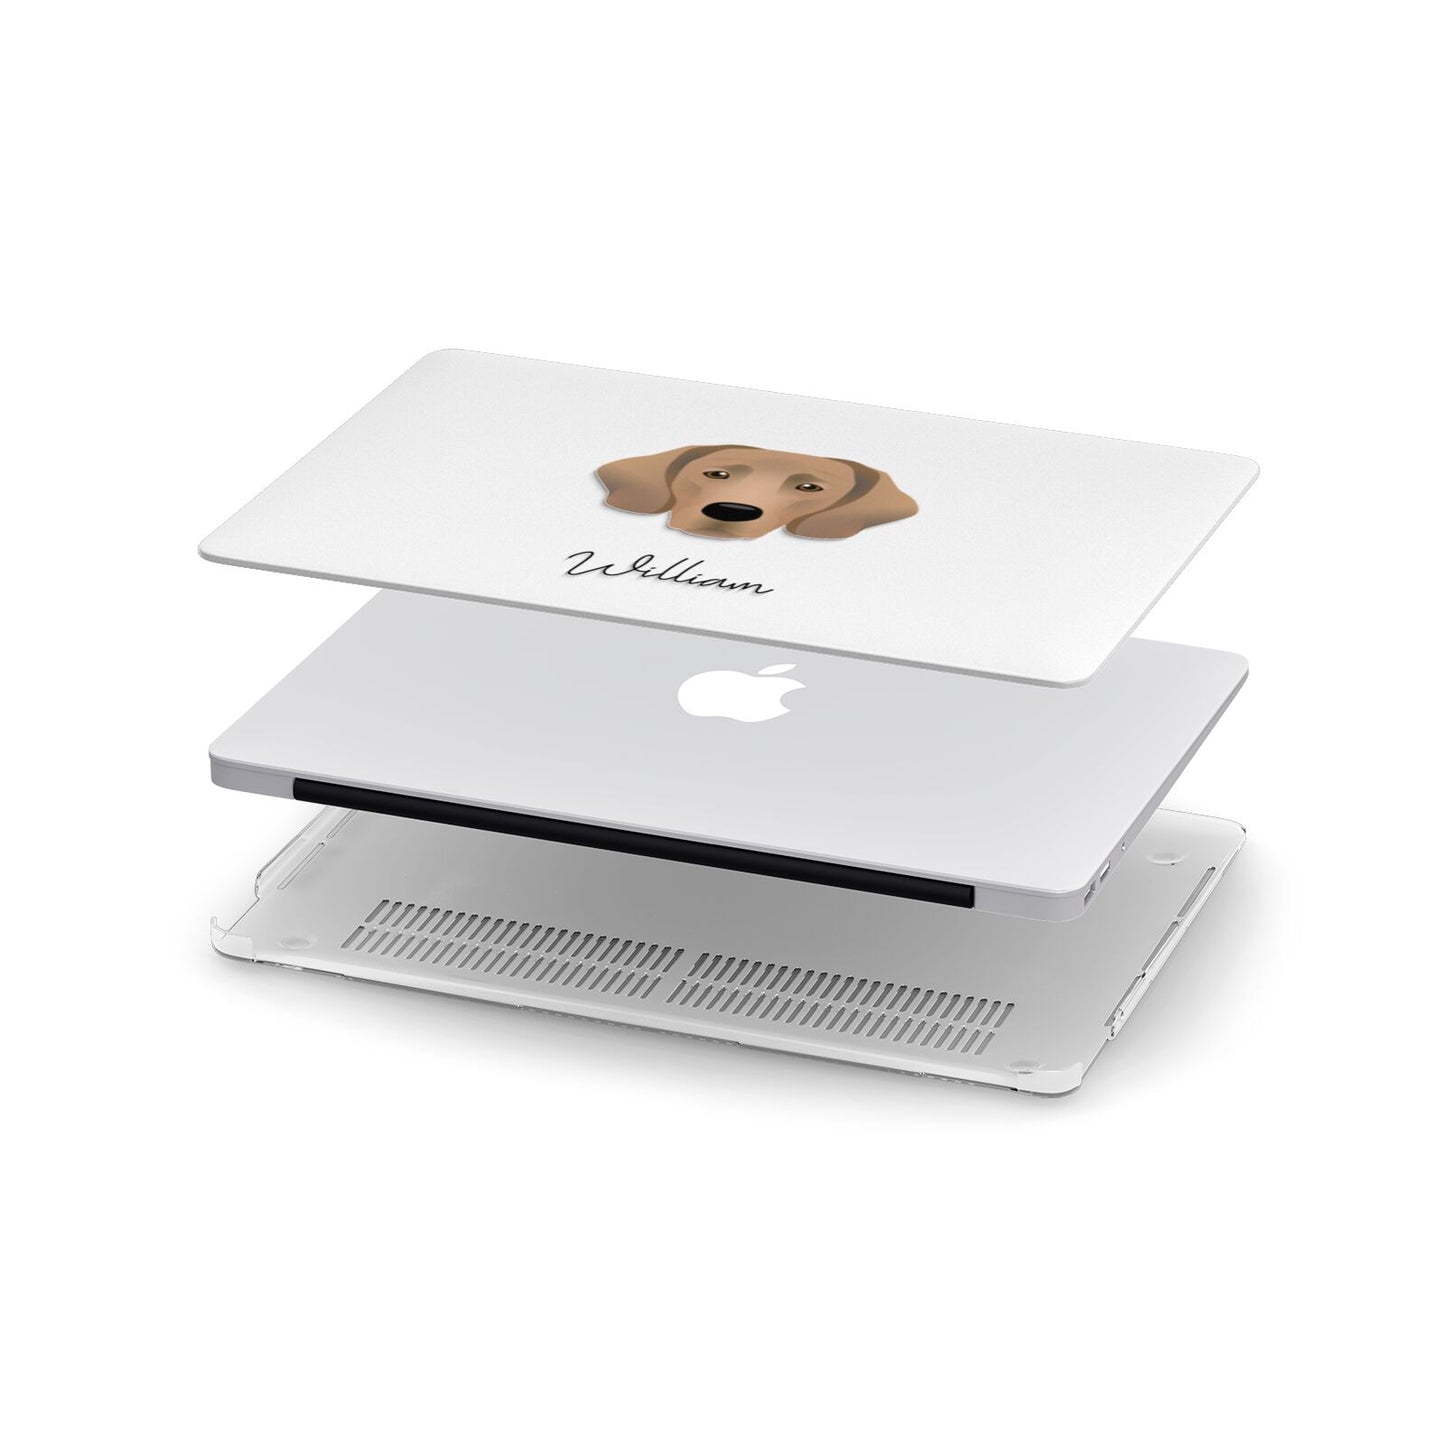 Springador Personalised Apple MacBook Case in Detail